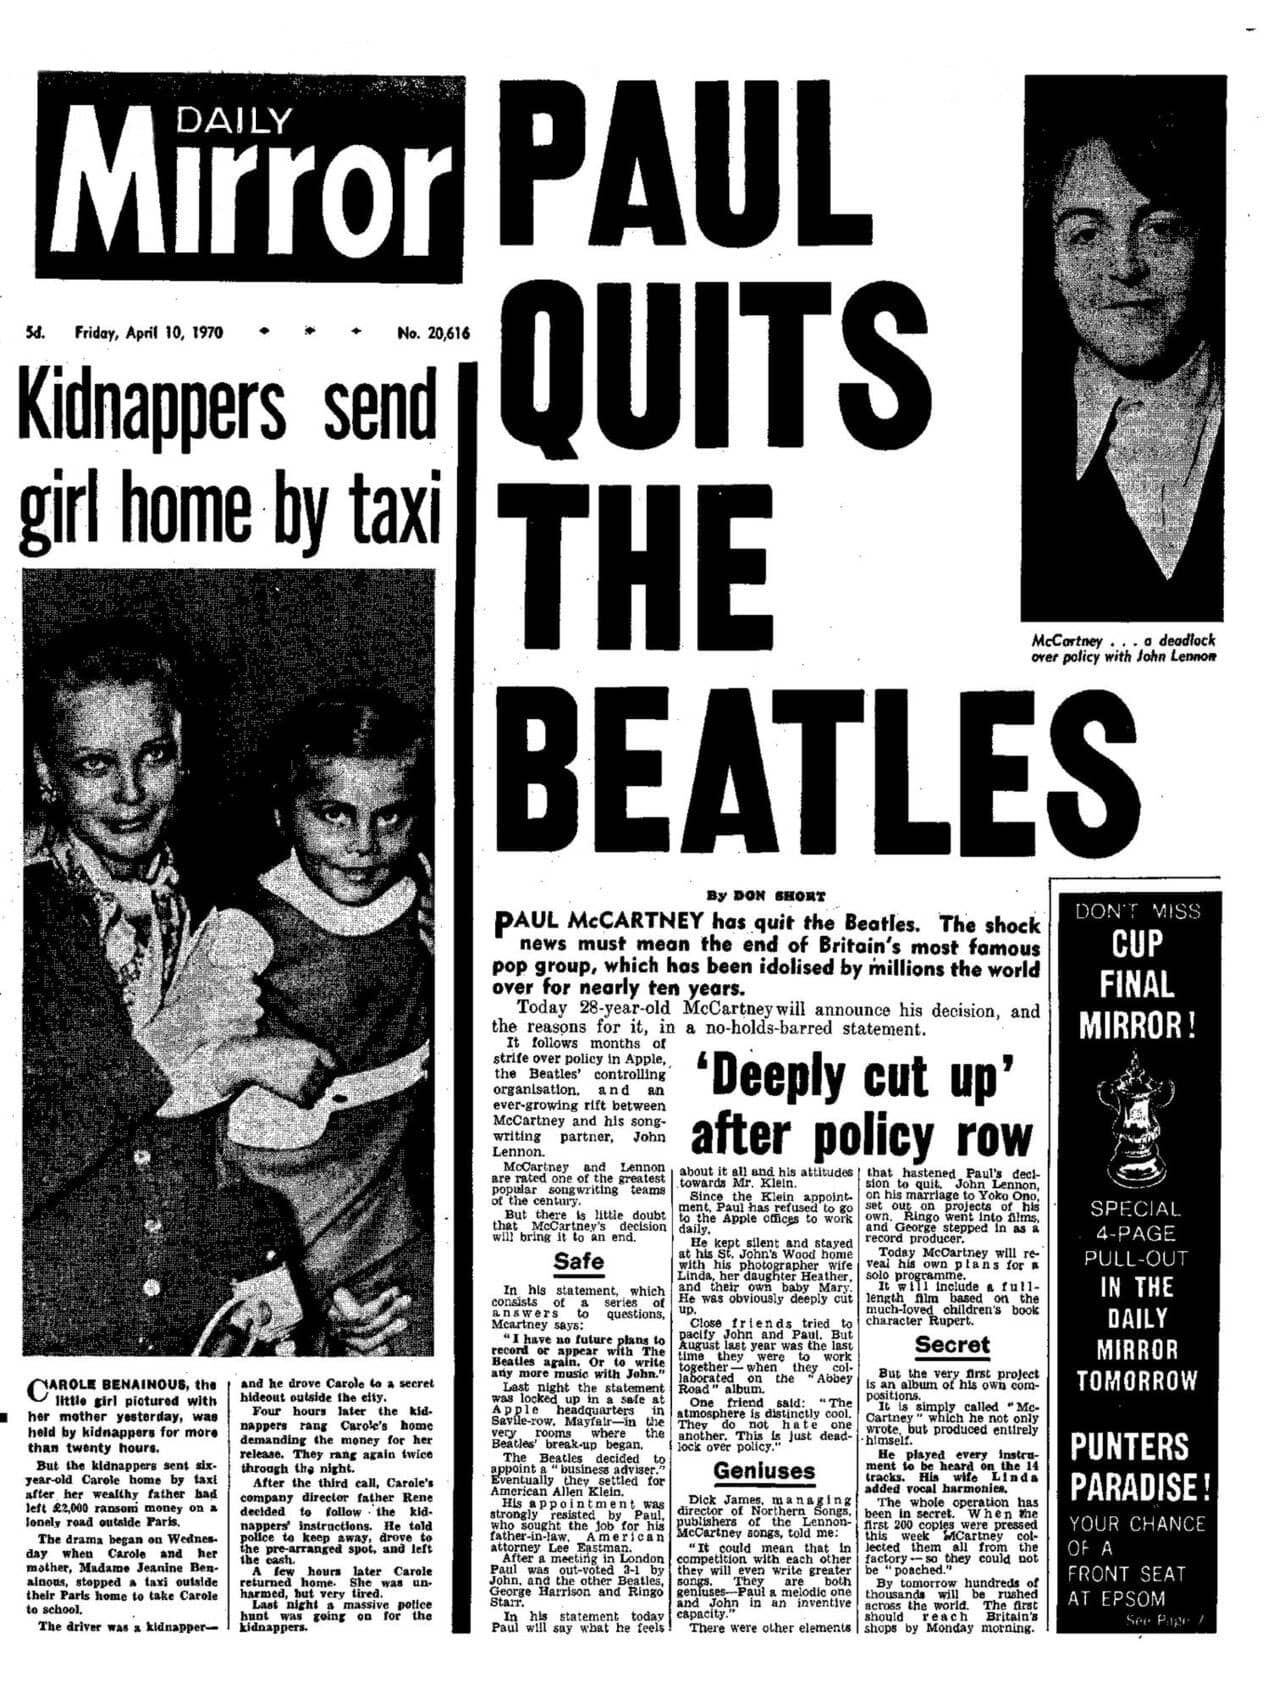 La edición de 'Daily Mirror' del 10 de abril de 1970 con el titular: 